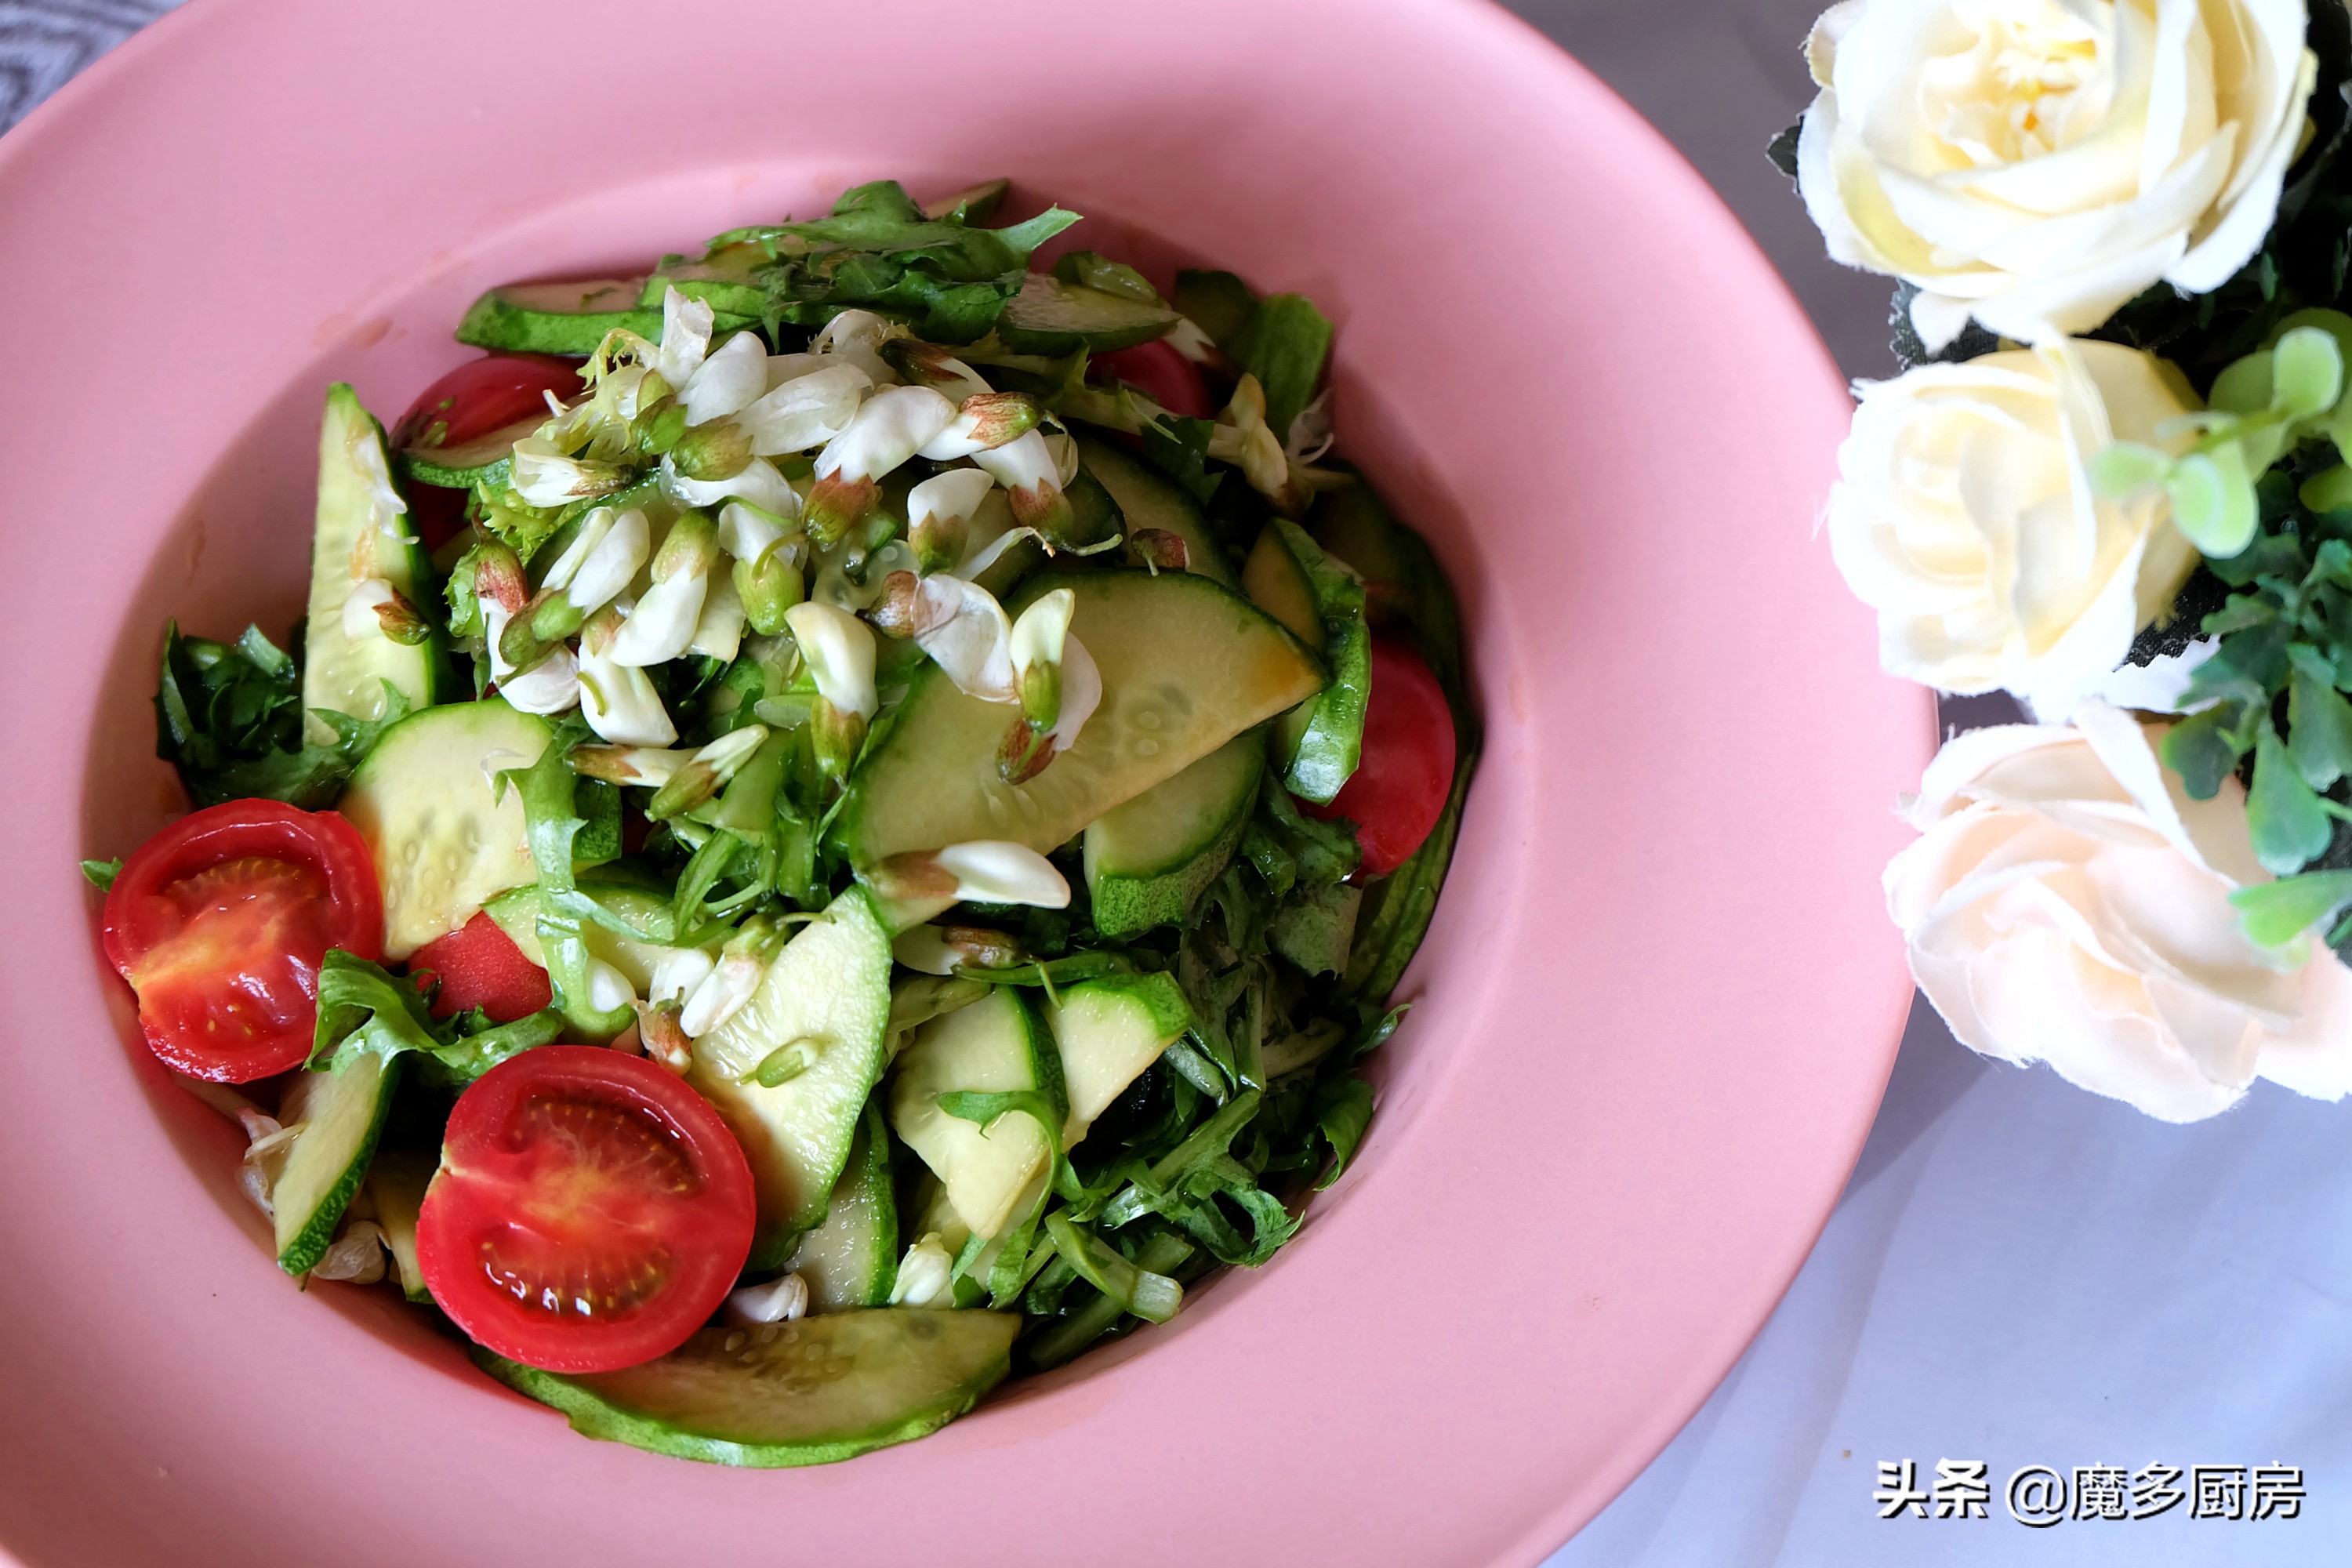 蔬菜沙拉,蔬菜沙拉一般用什么蔬菜